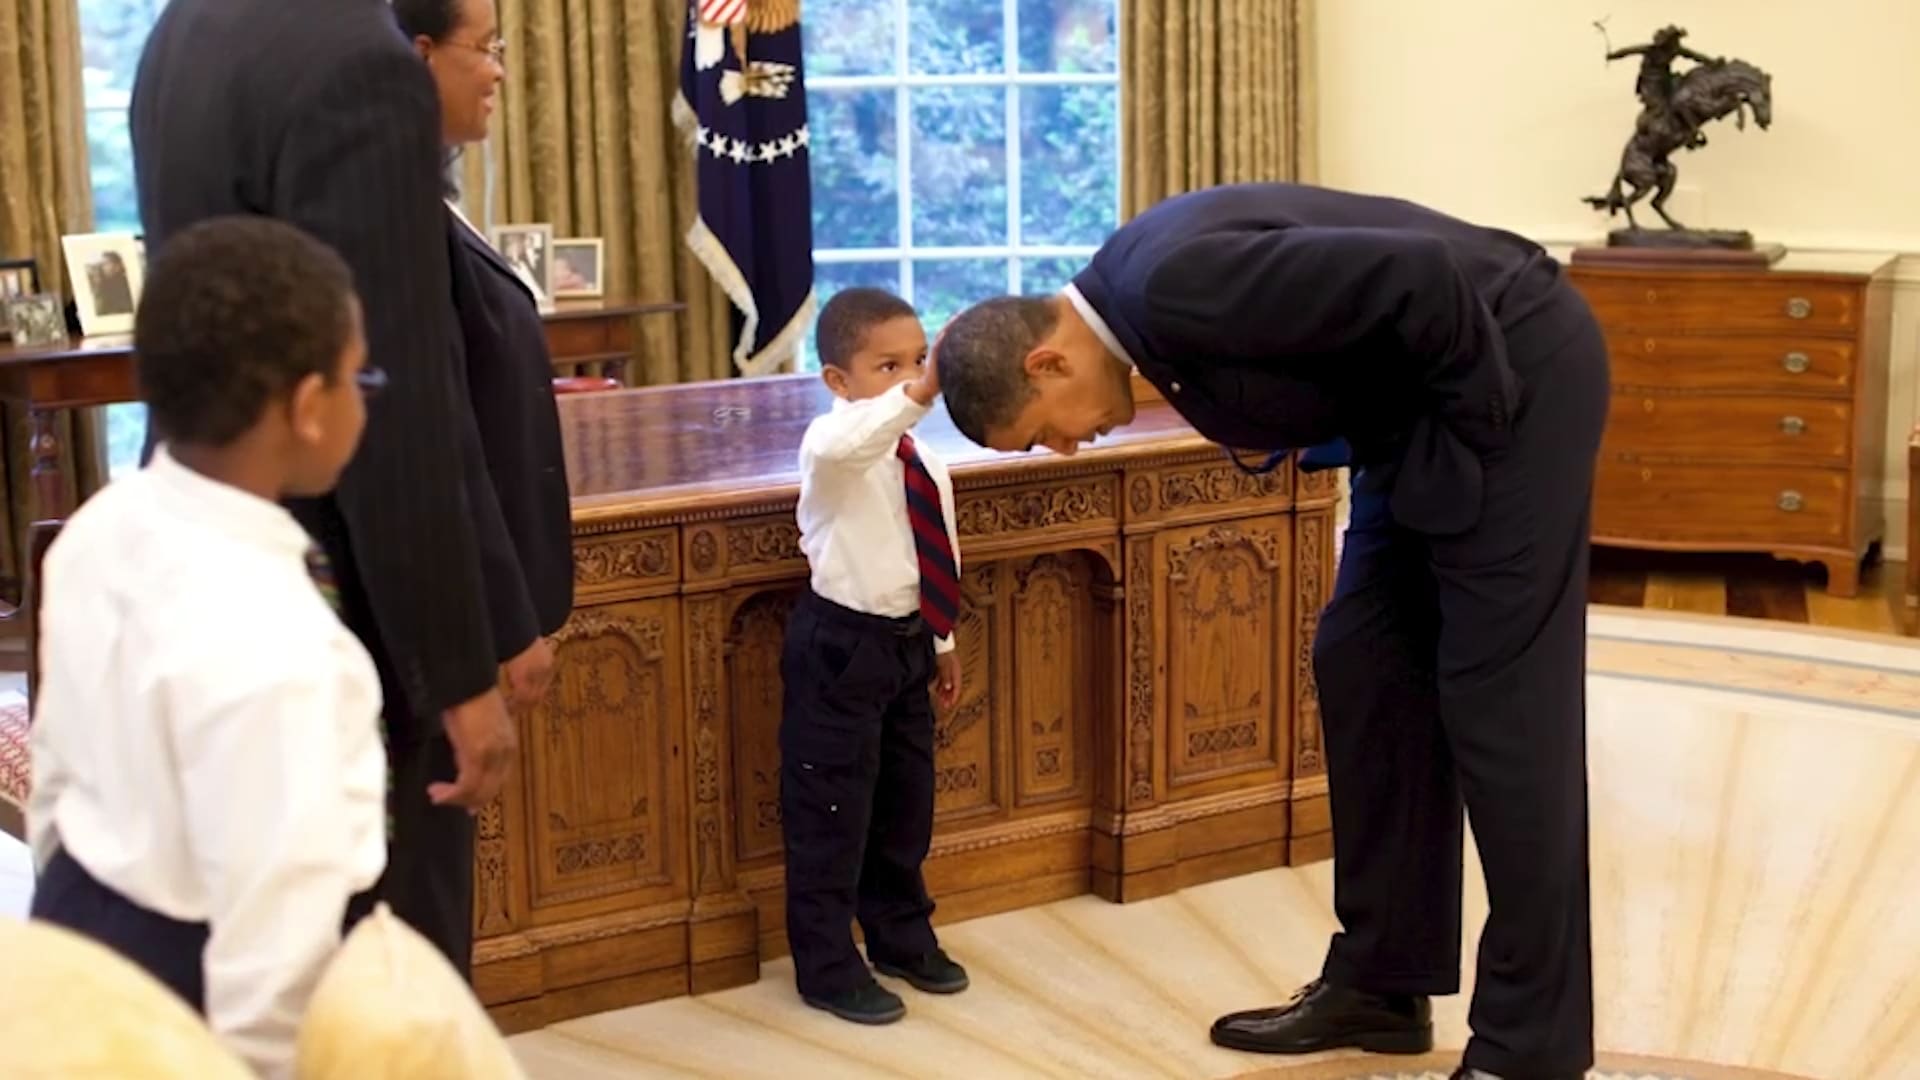 أوباما يتواصل مع طفل لمس شعره في هذه الصورة الأيقونية